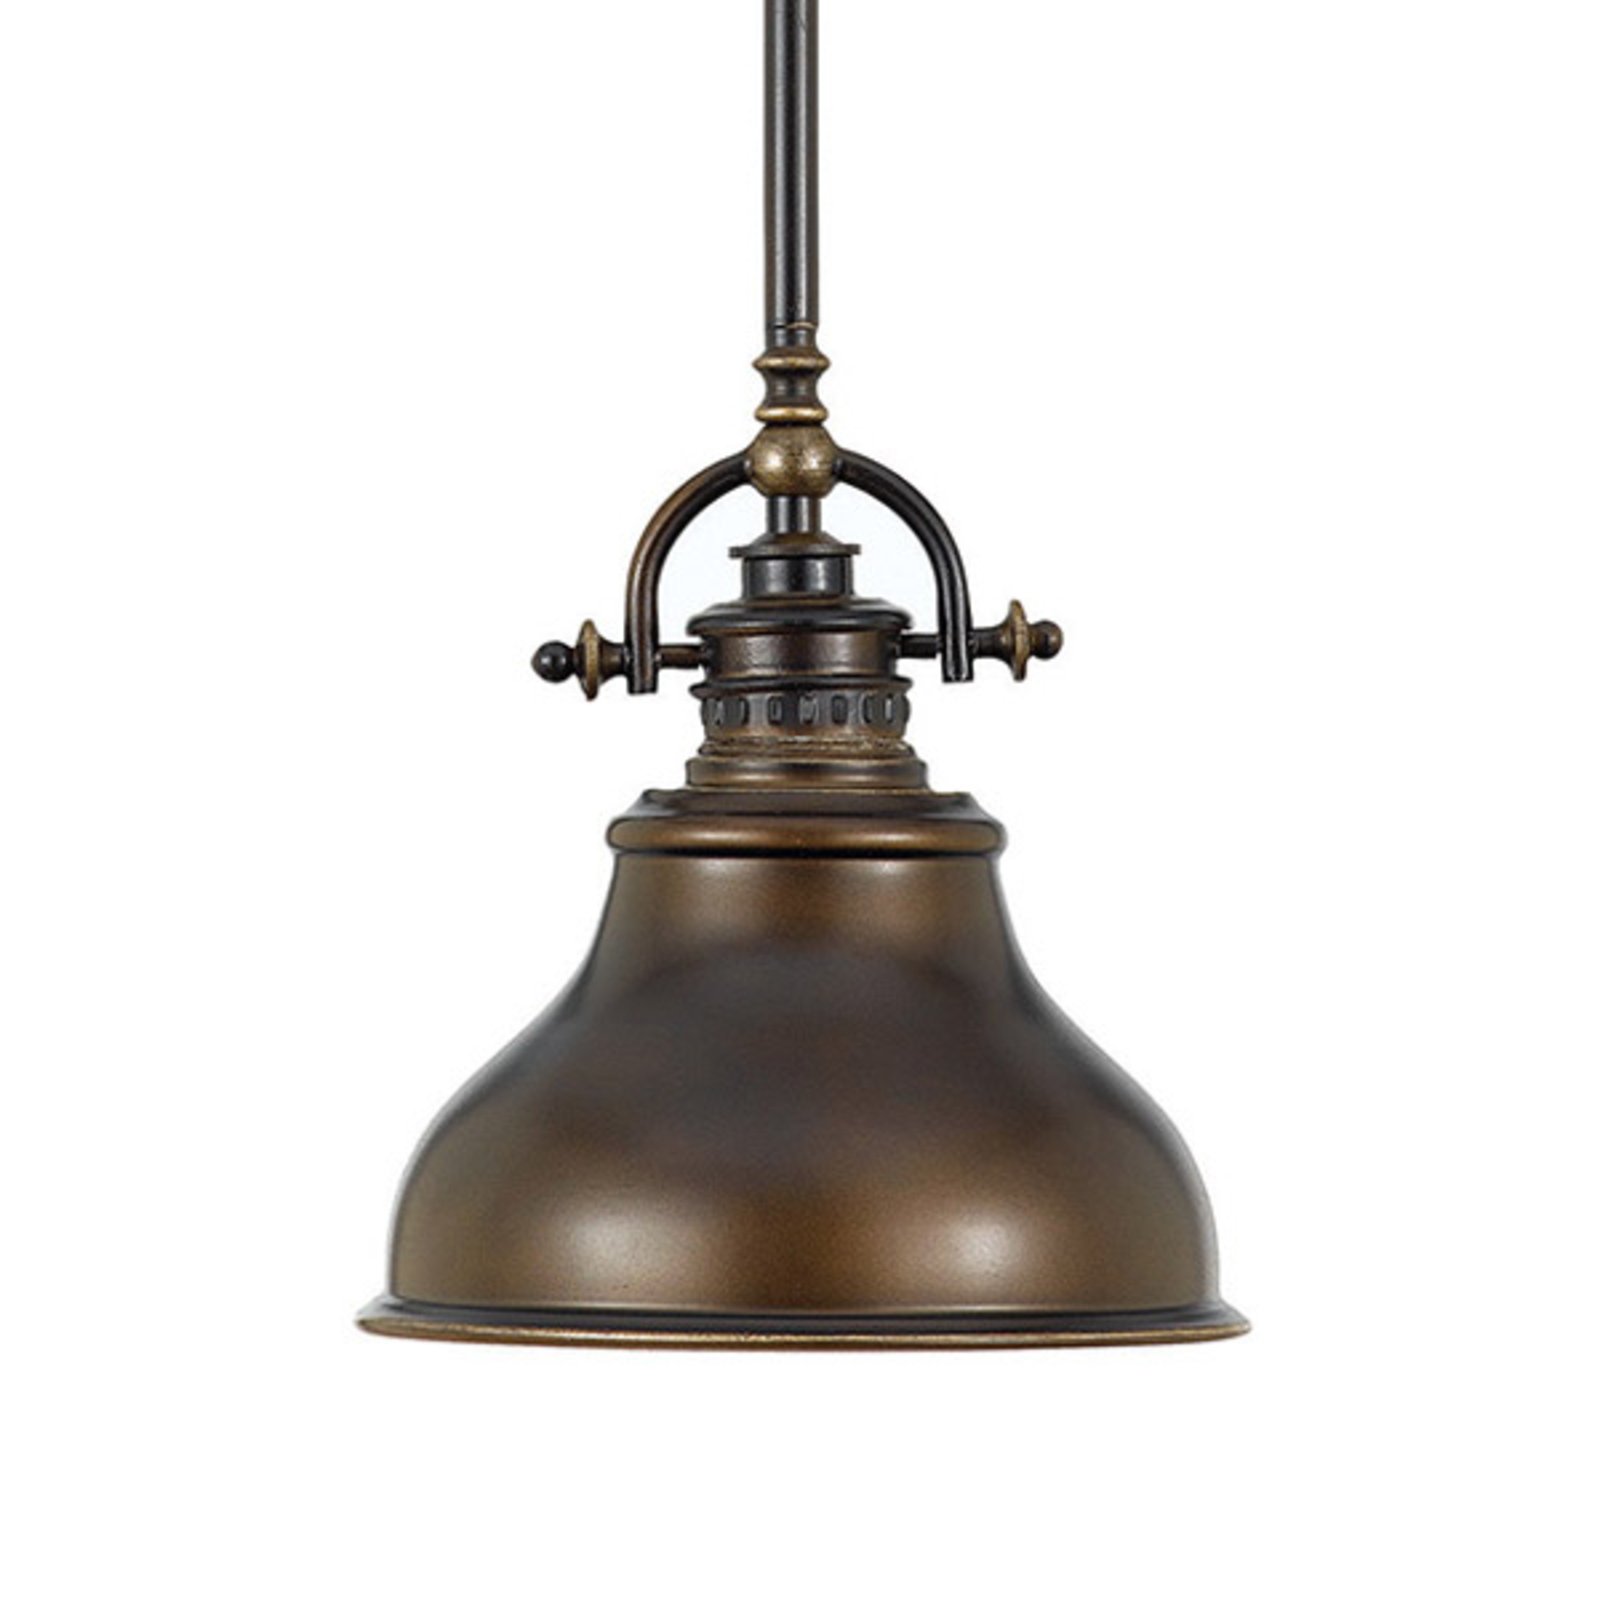 Variant Elektricien Ontslag Hanglamp Emery in industriële stijl brons Ø 20,3cm | Lampen24.nl